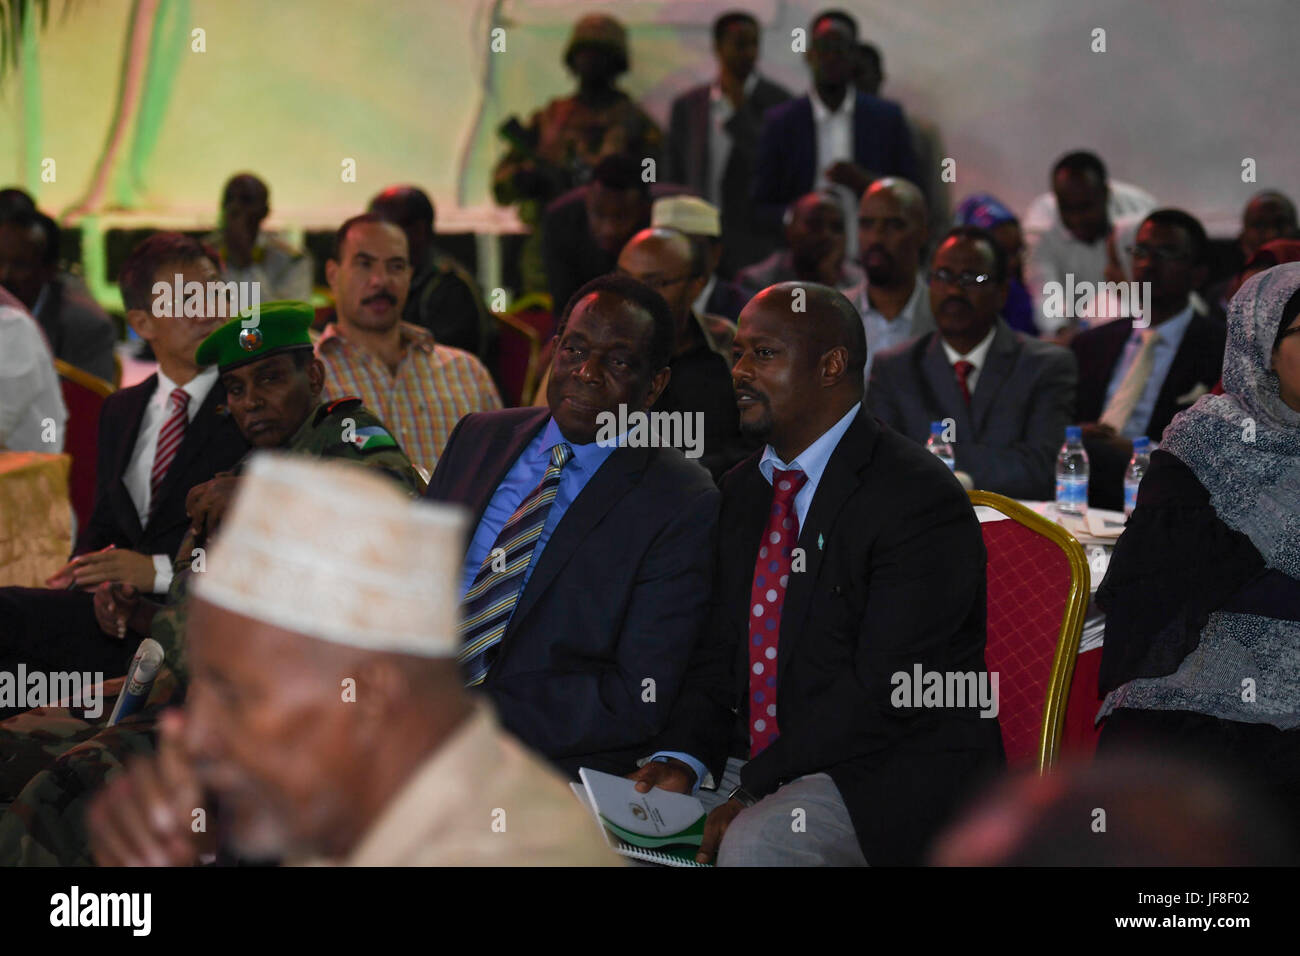 L'ambassadeur Francisco Madeira, le Représentant spécial du Président de la Commission de l'Union africaine (SRCC) pour la Somalie, d'autres invités assister à une cérémonie pour marquer le 57e anniversaire de la journée des régions du nord de la Somalie ont obtenu leur indépendance de la Grande-Bretagne le 26 juin 1960. Cet événement a eu lieu à Mogadiscio's town hall le 26 juin 2017. L'AMISOM Photo / Ilyas Ahmed Banque D'Images